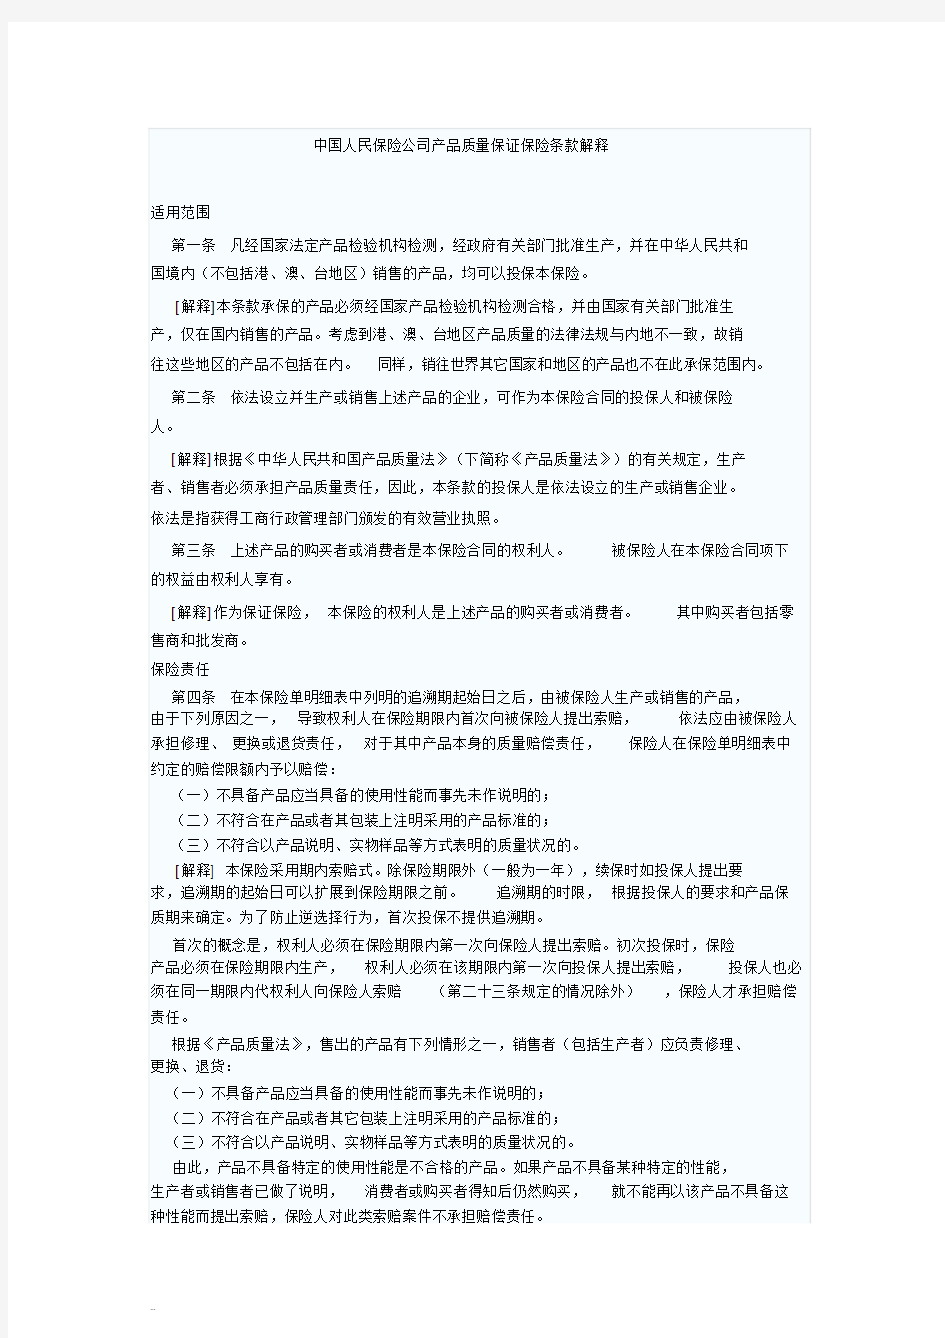 中国人民保险公司产品质量保证保险条款解释-(11267)